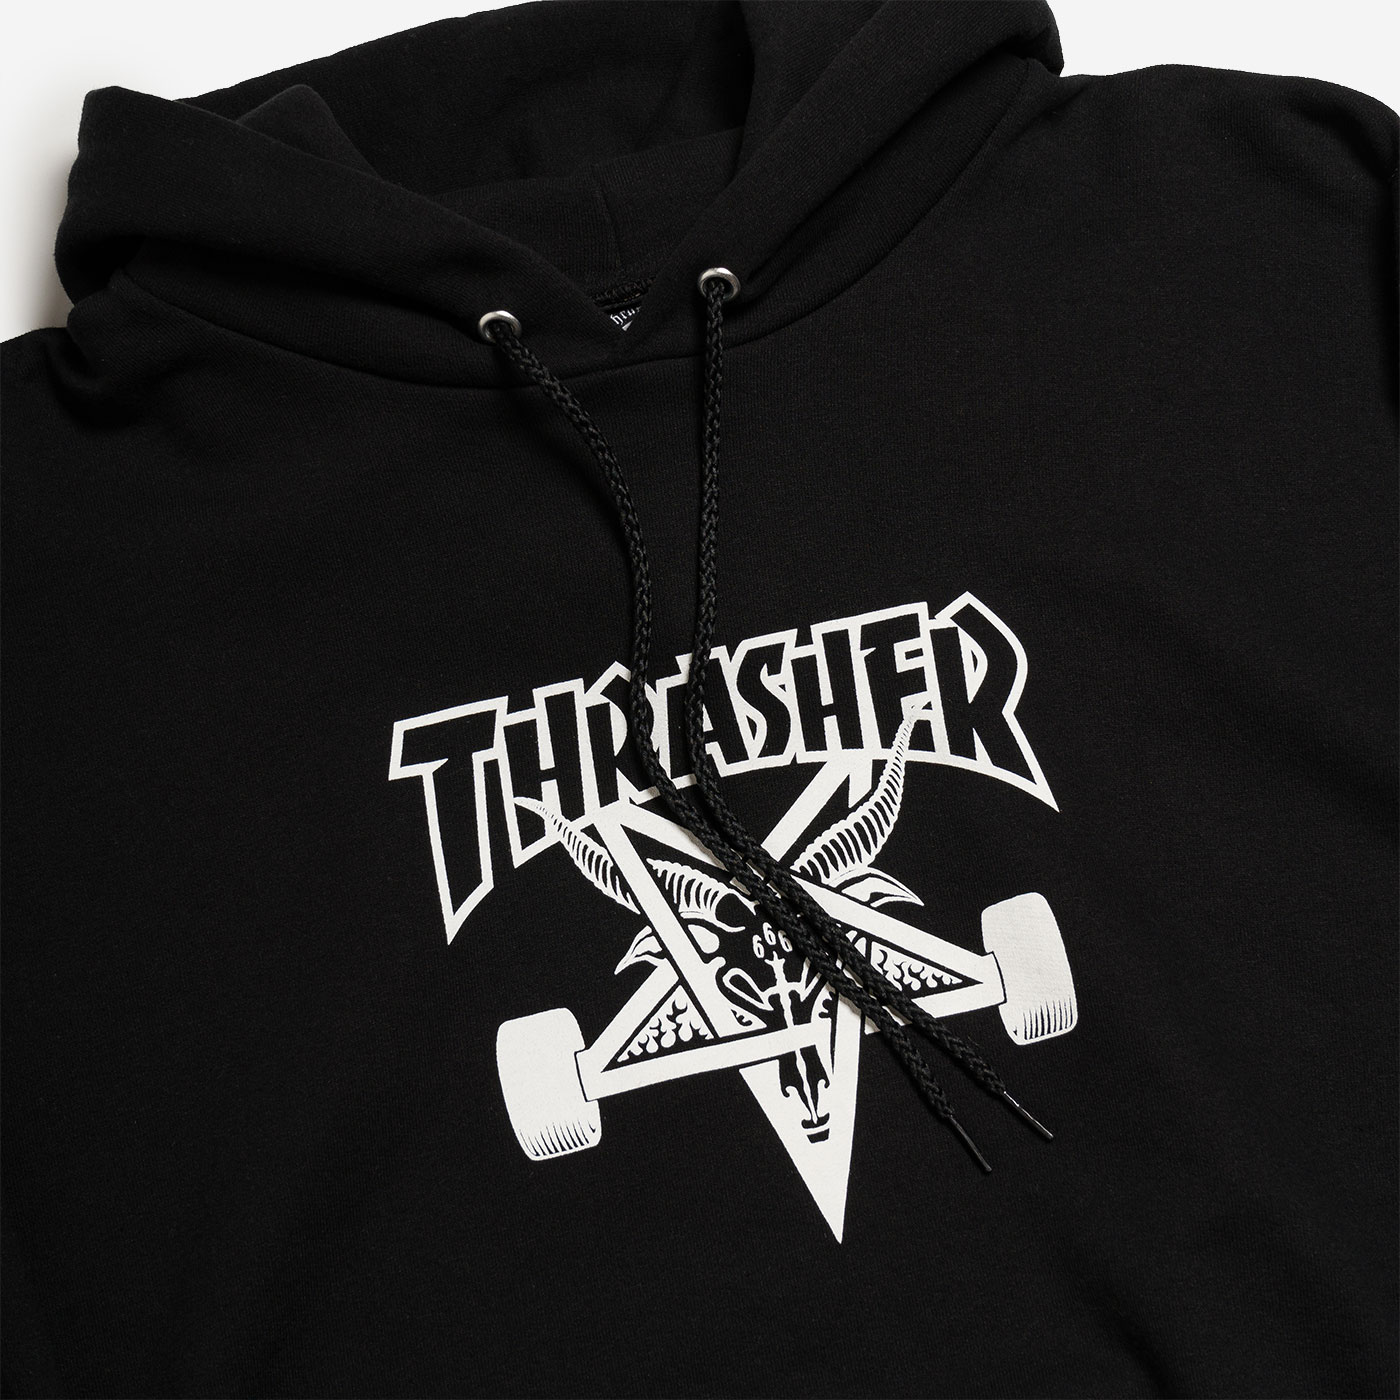 Thrasher SK8 Goat Hood Black